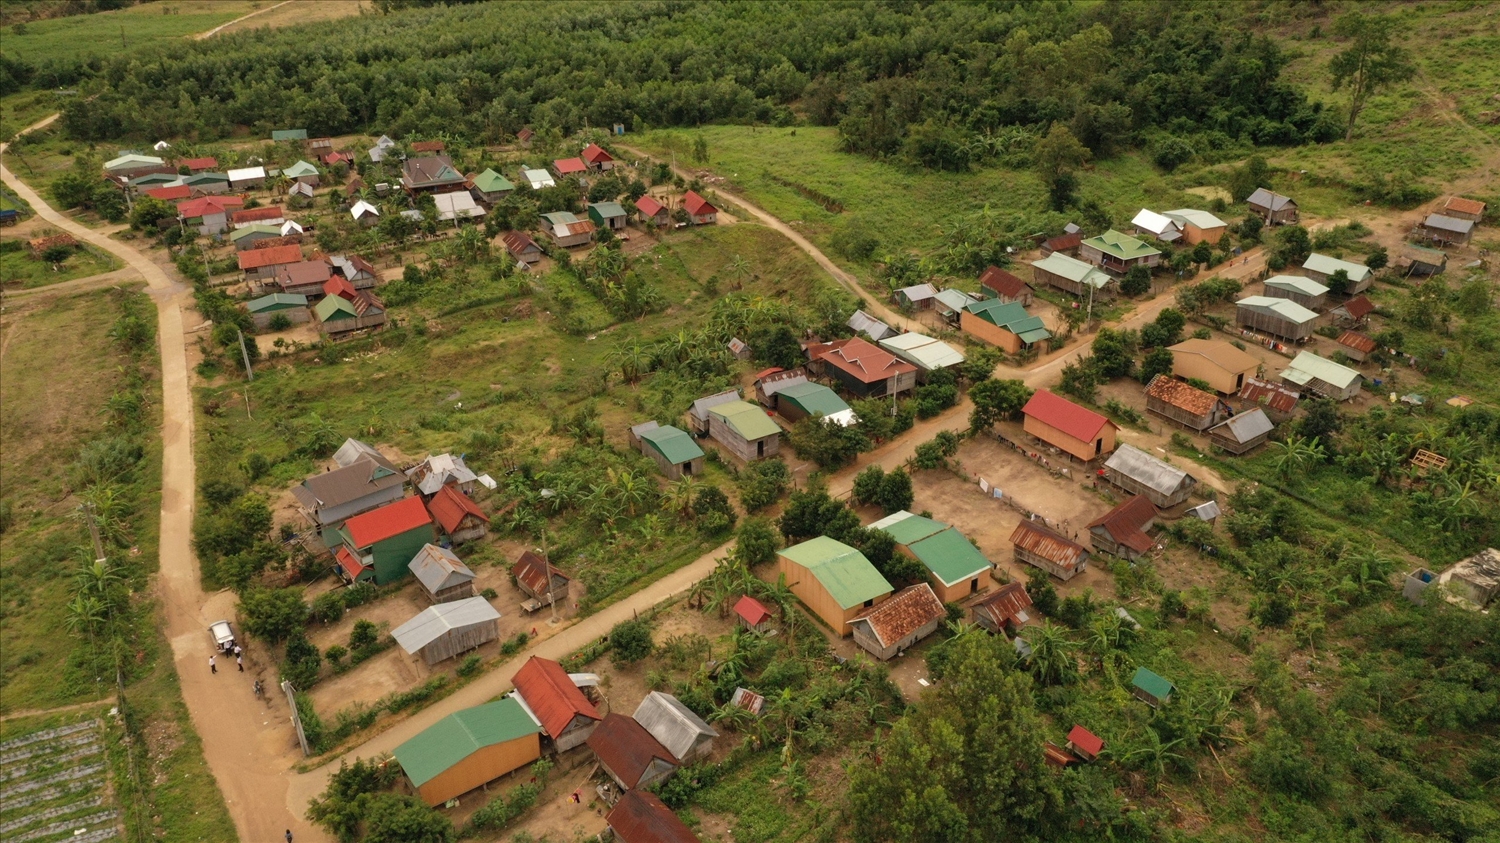 Cuộc sống của người dân ở nhiều buôn làng Gia Lai còn khó khăn, tập quán văn hóa... khiến tiếp cận các dịch vụ chăm sóc sức khỏe vùng đồng bào DTTS còn hạn chế